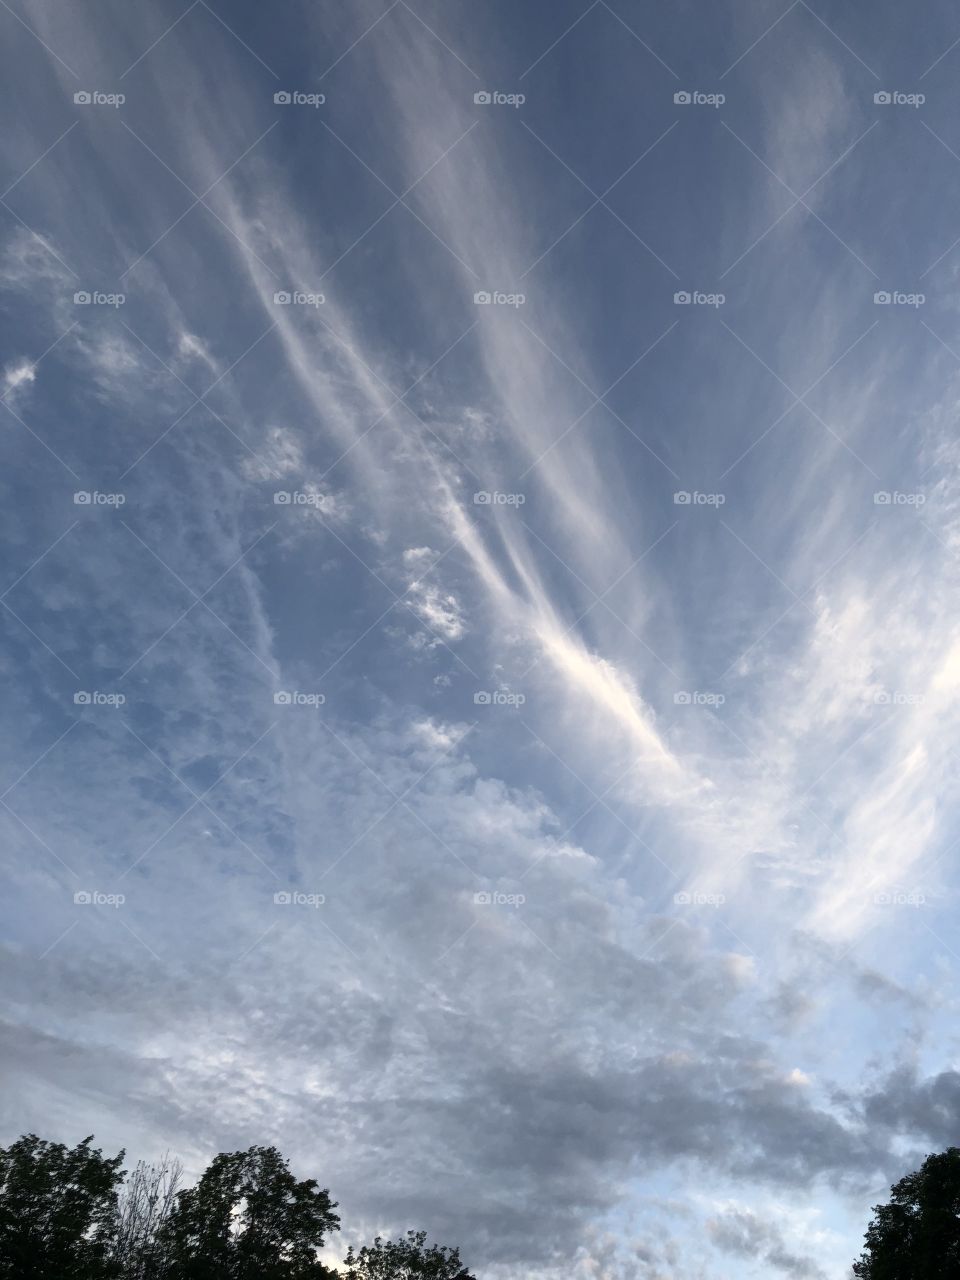 Cloud patterns